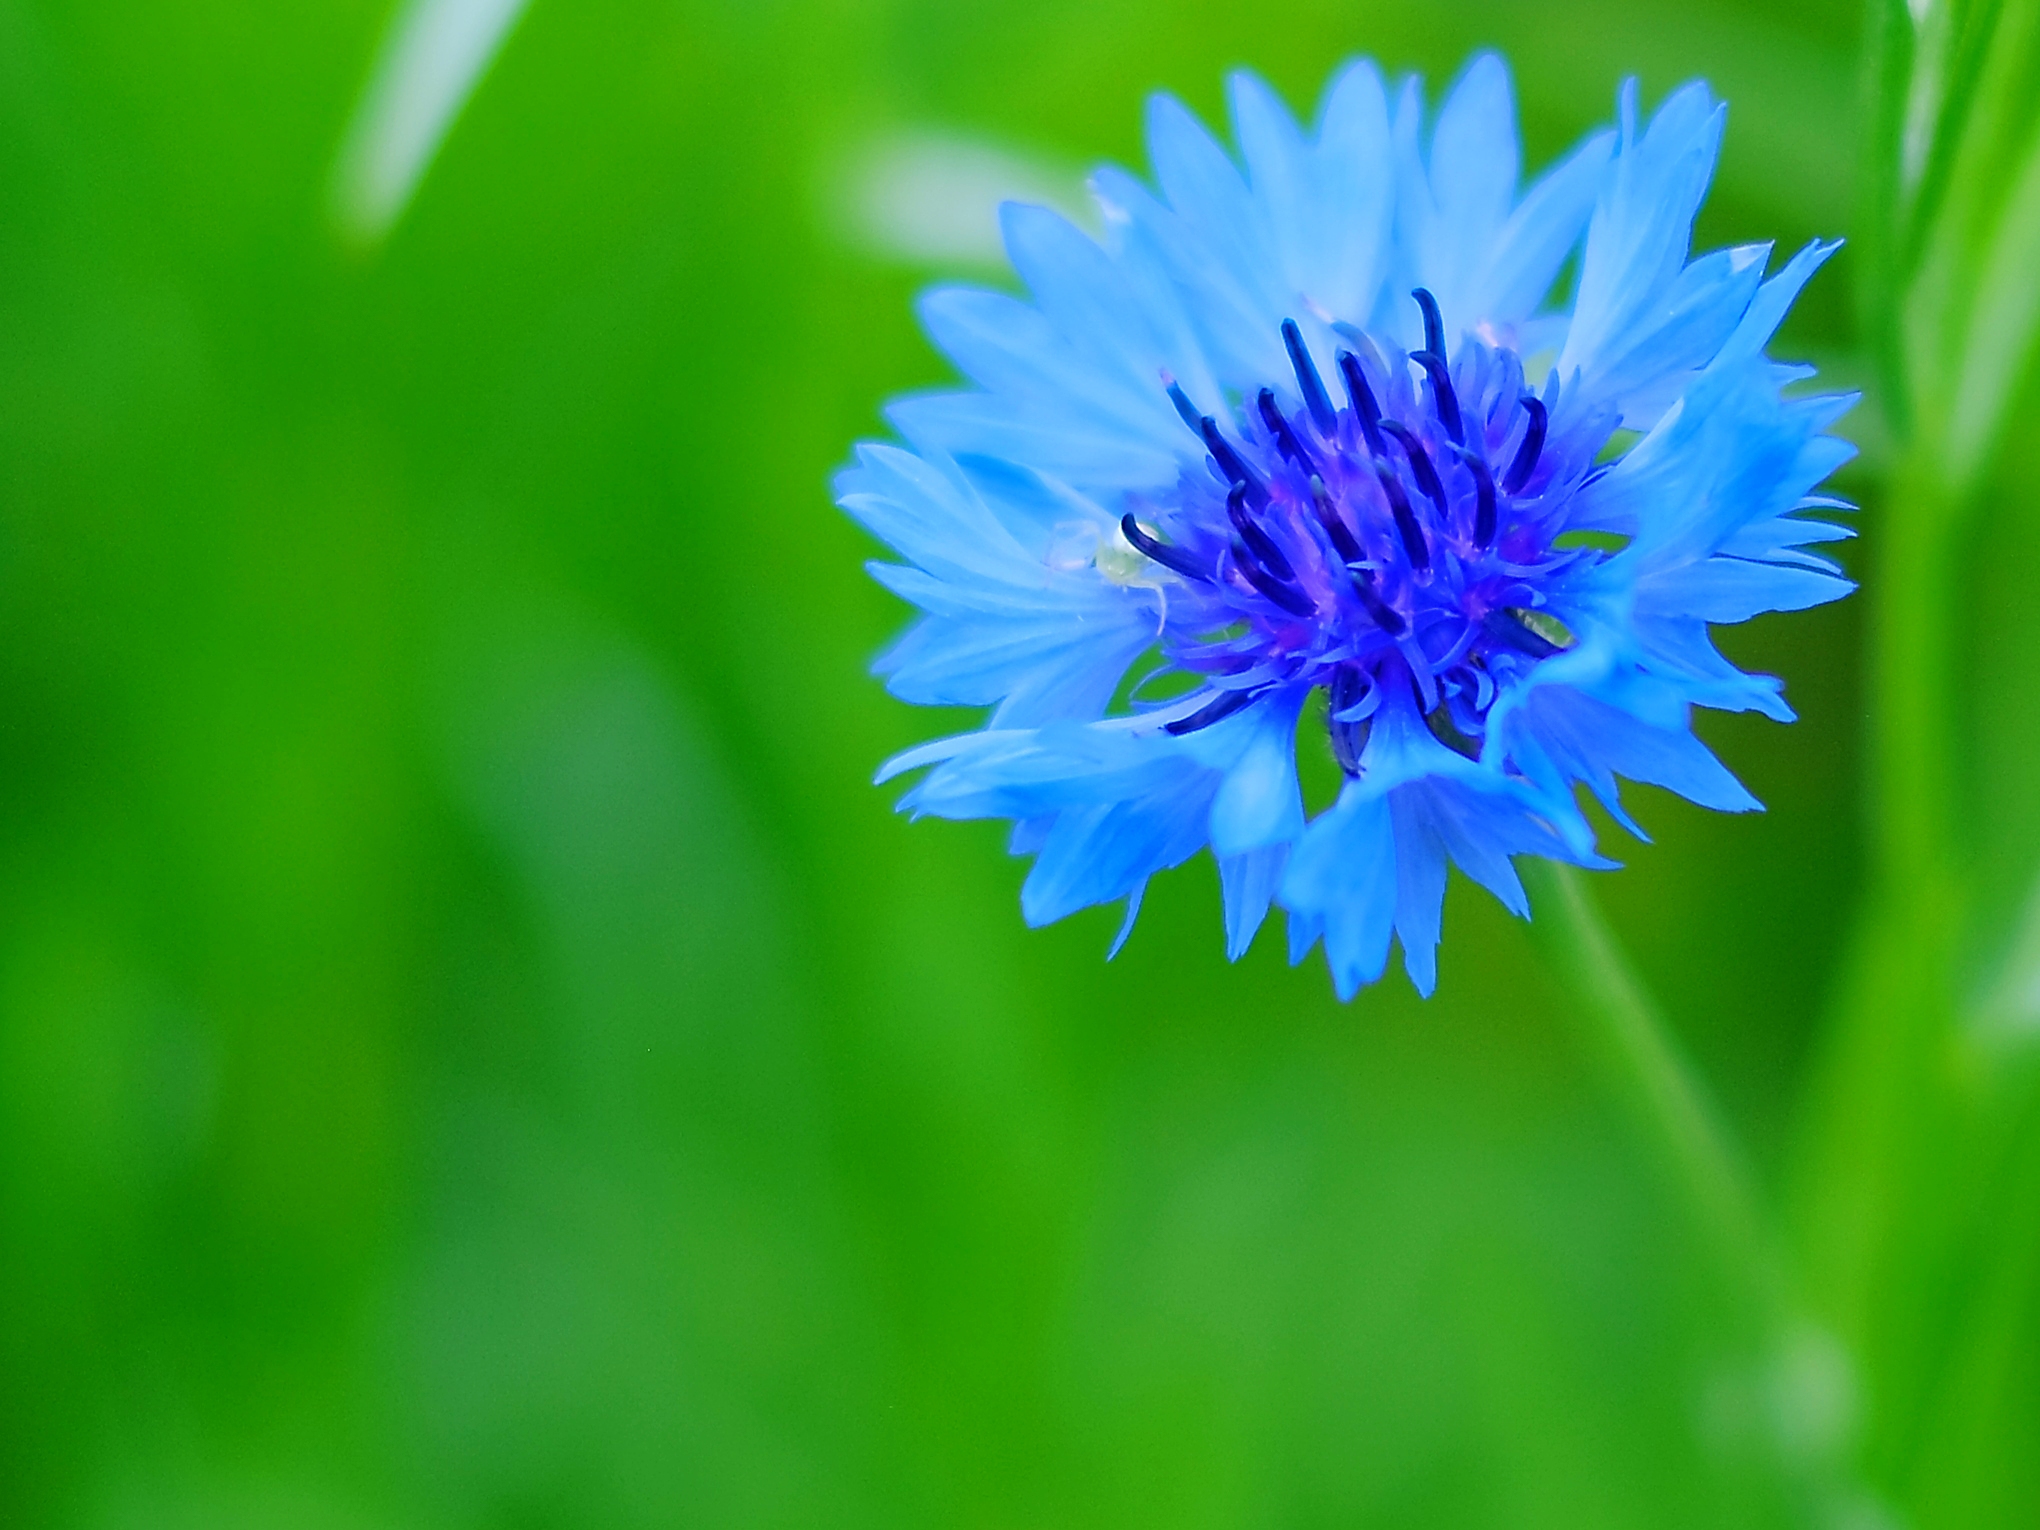 漂亮的蓝花矢车菊